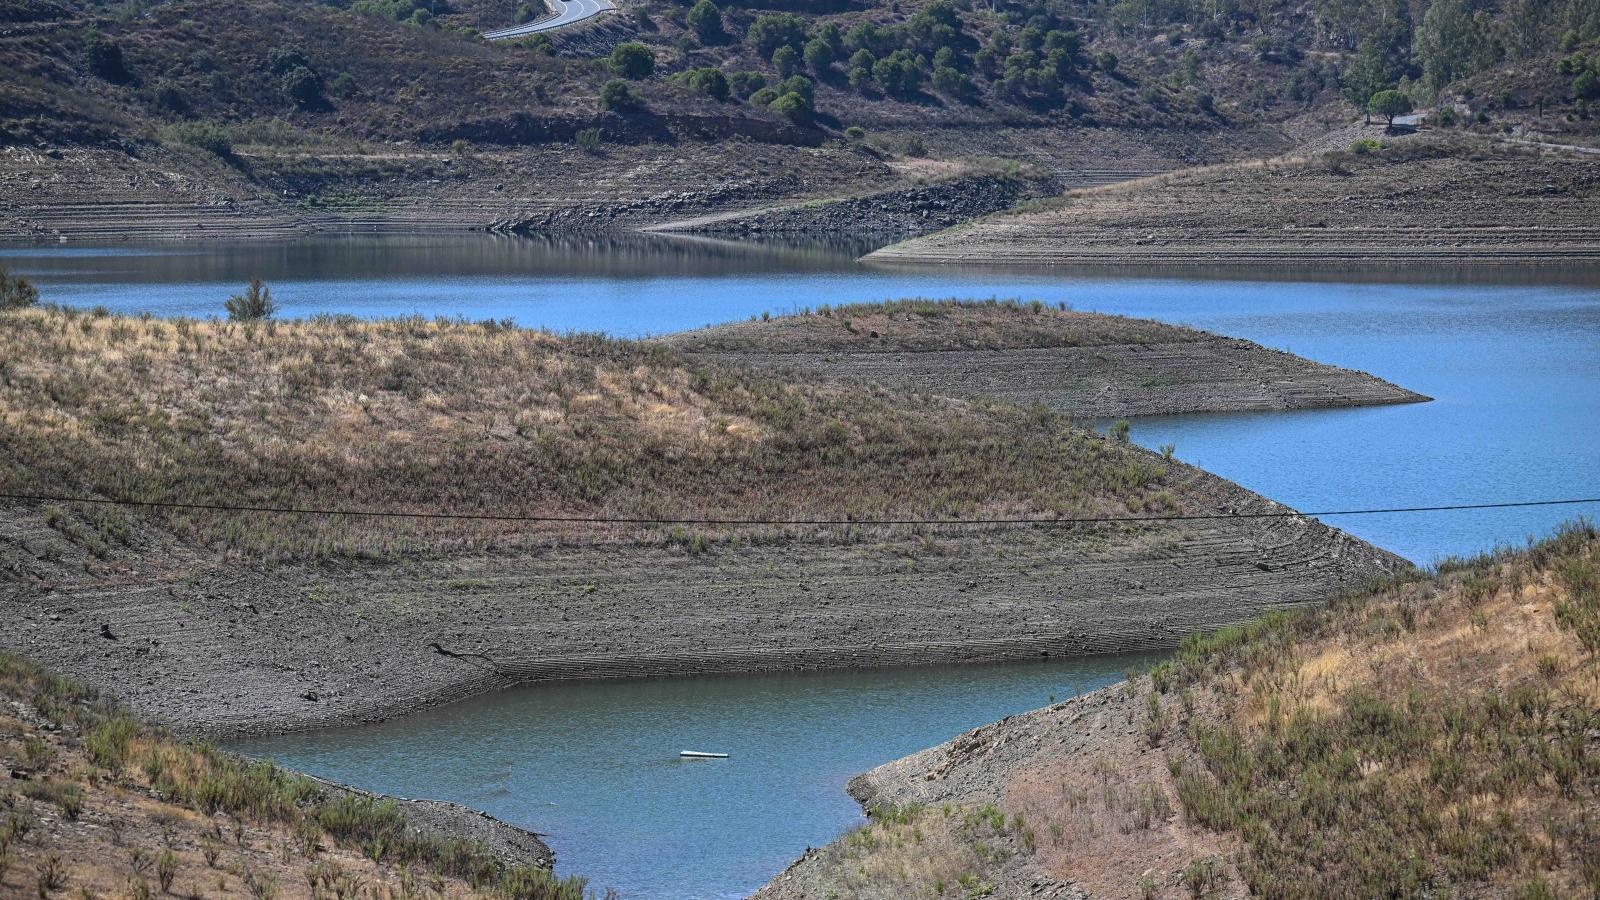 Portugal e Espanha devem elaborar estratégias sobre gestão de bacias hidrográficas - organizações